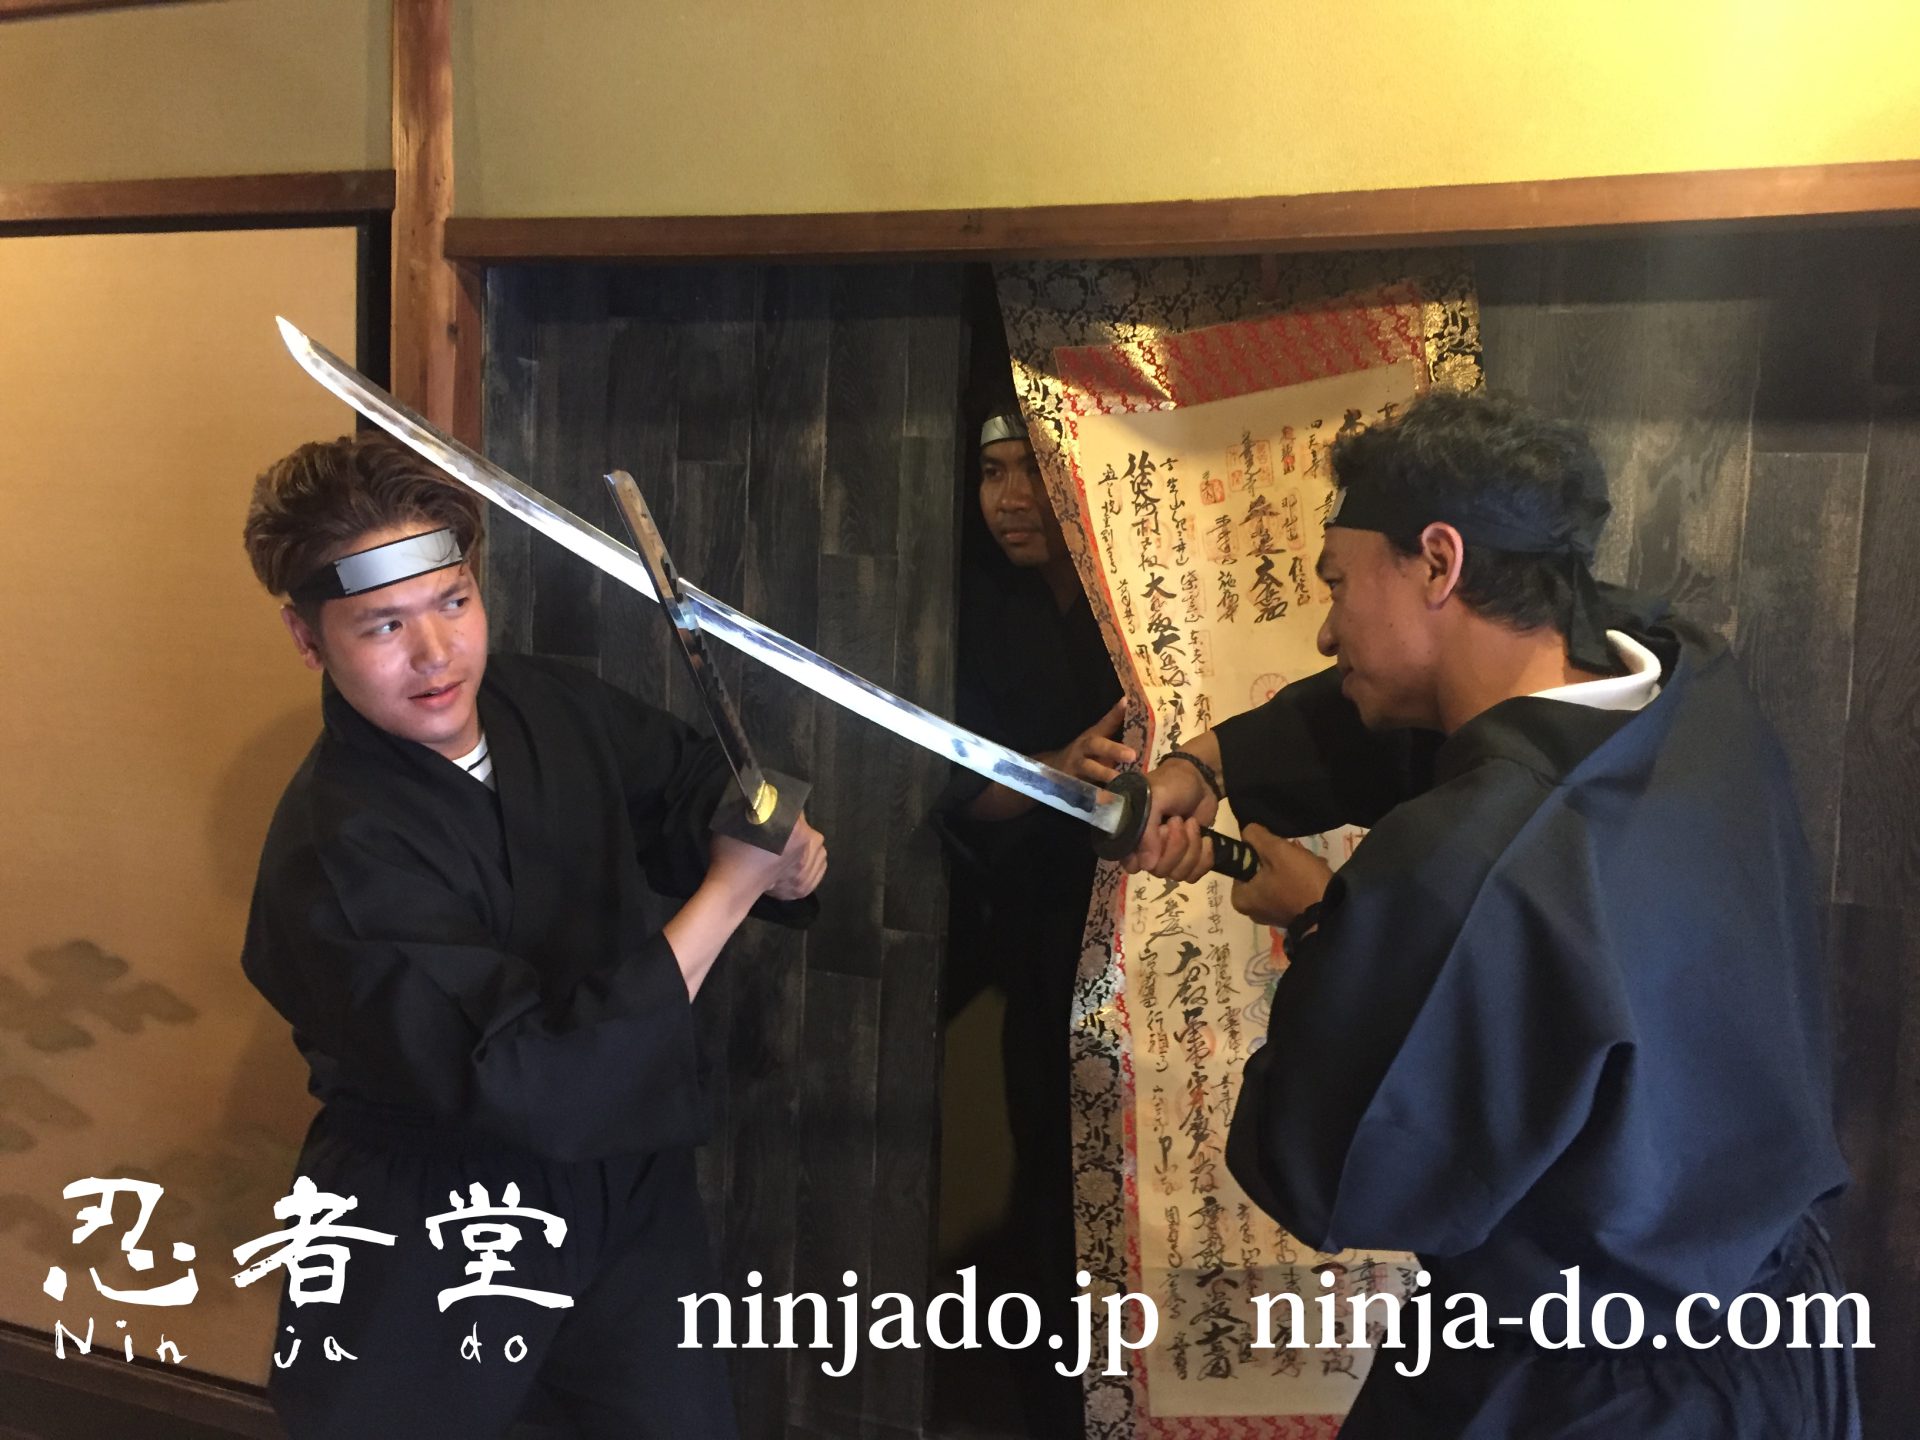 Ninjado_ninja_08205